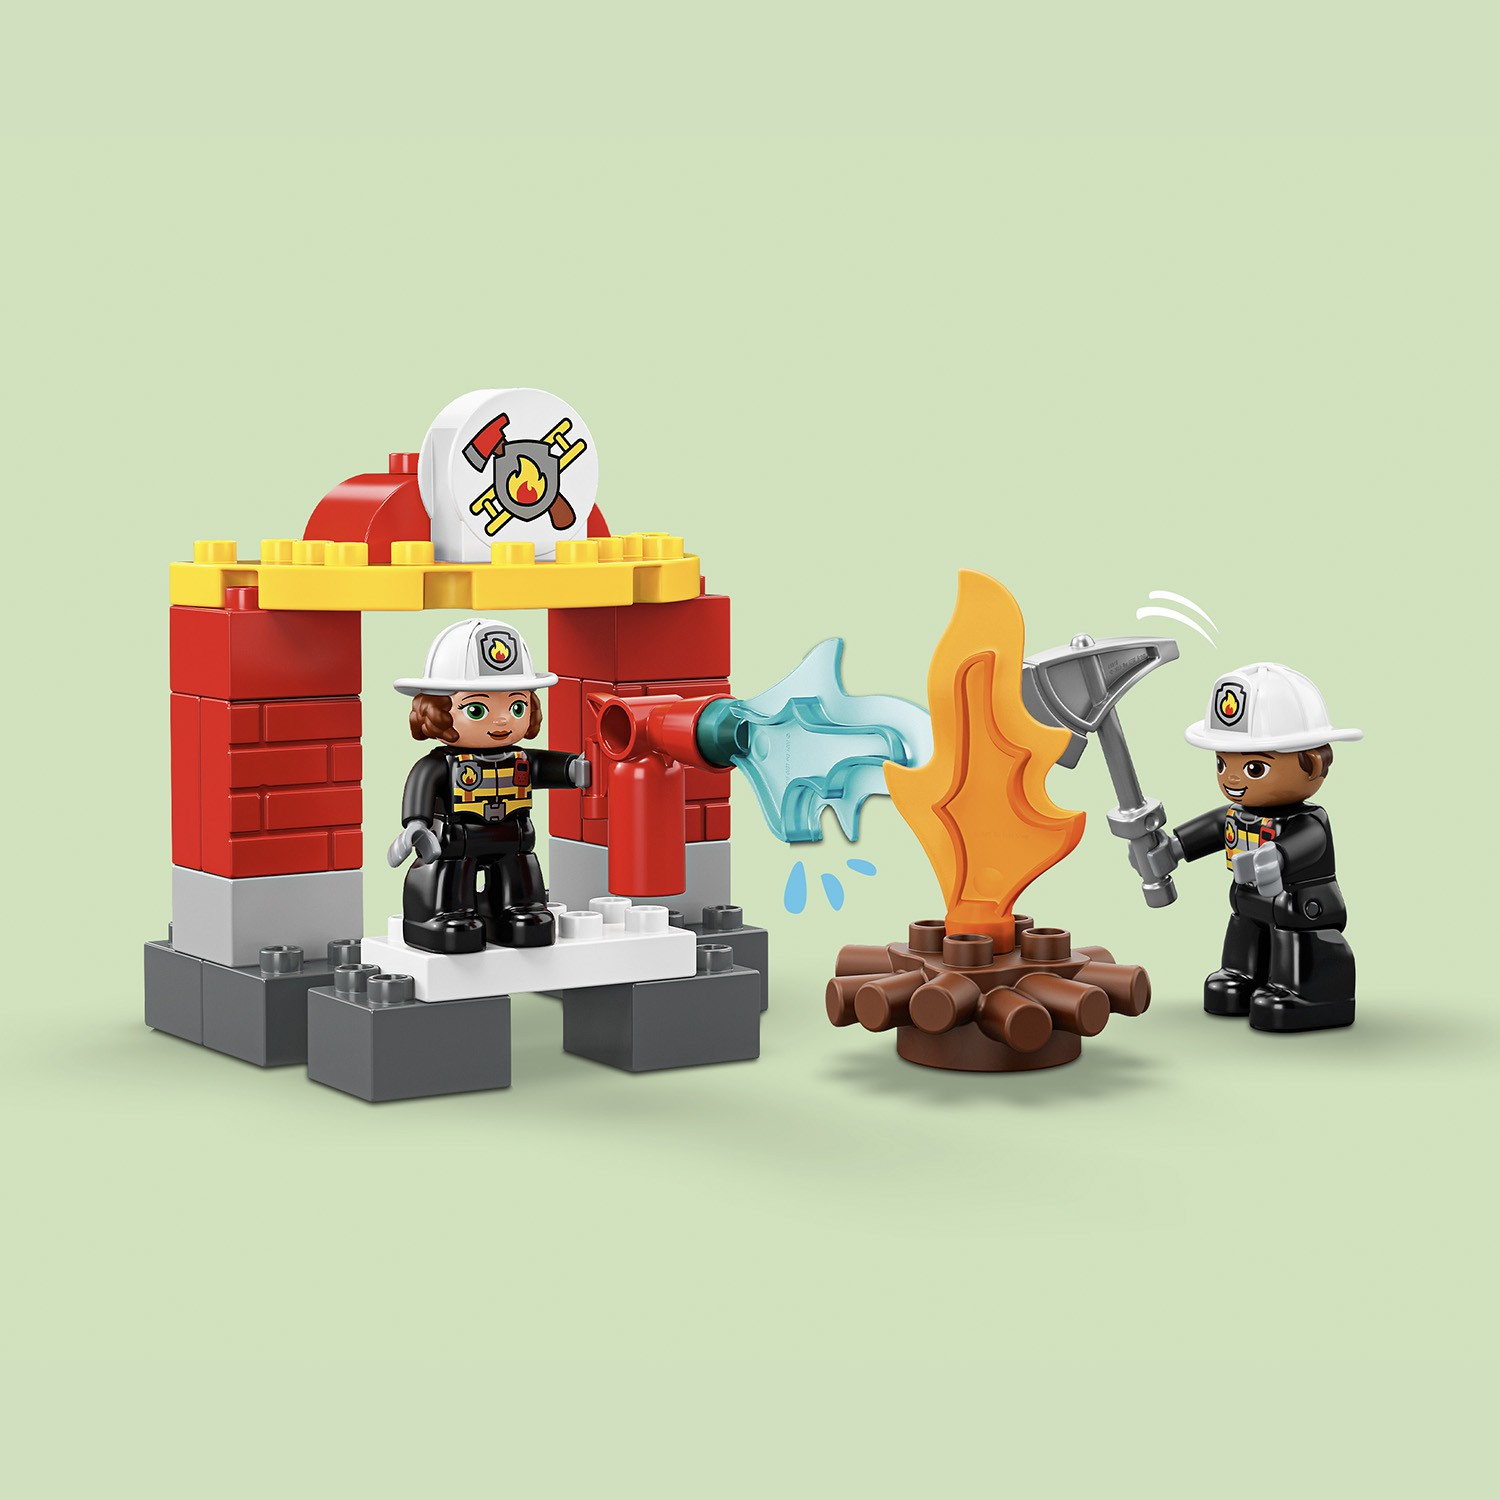 LEGO DUPLO Feuerwehrwache